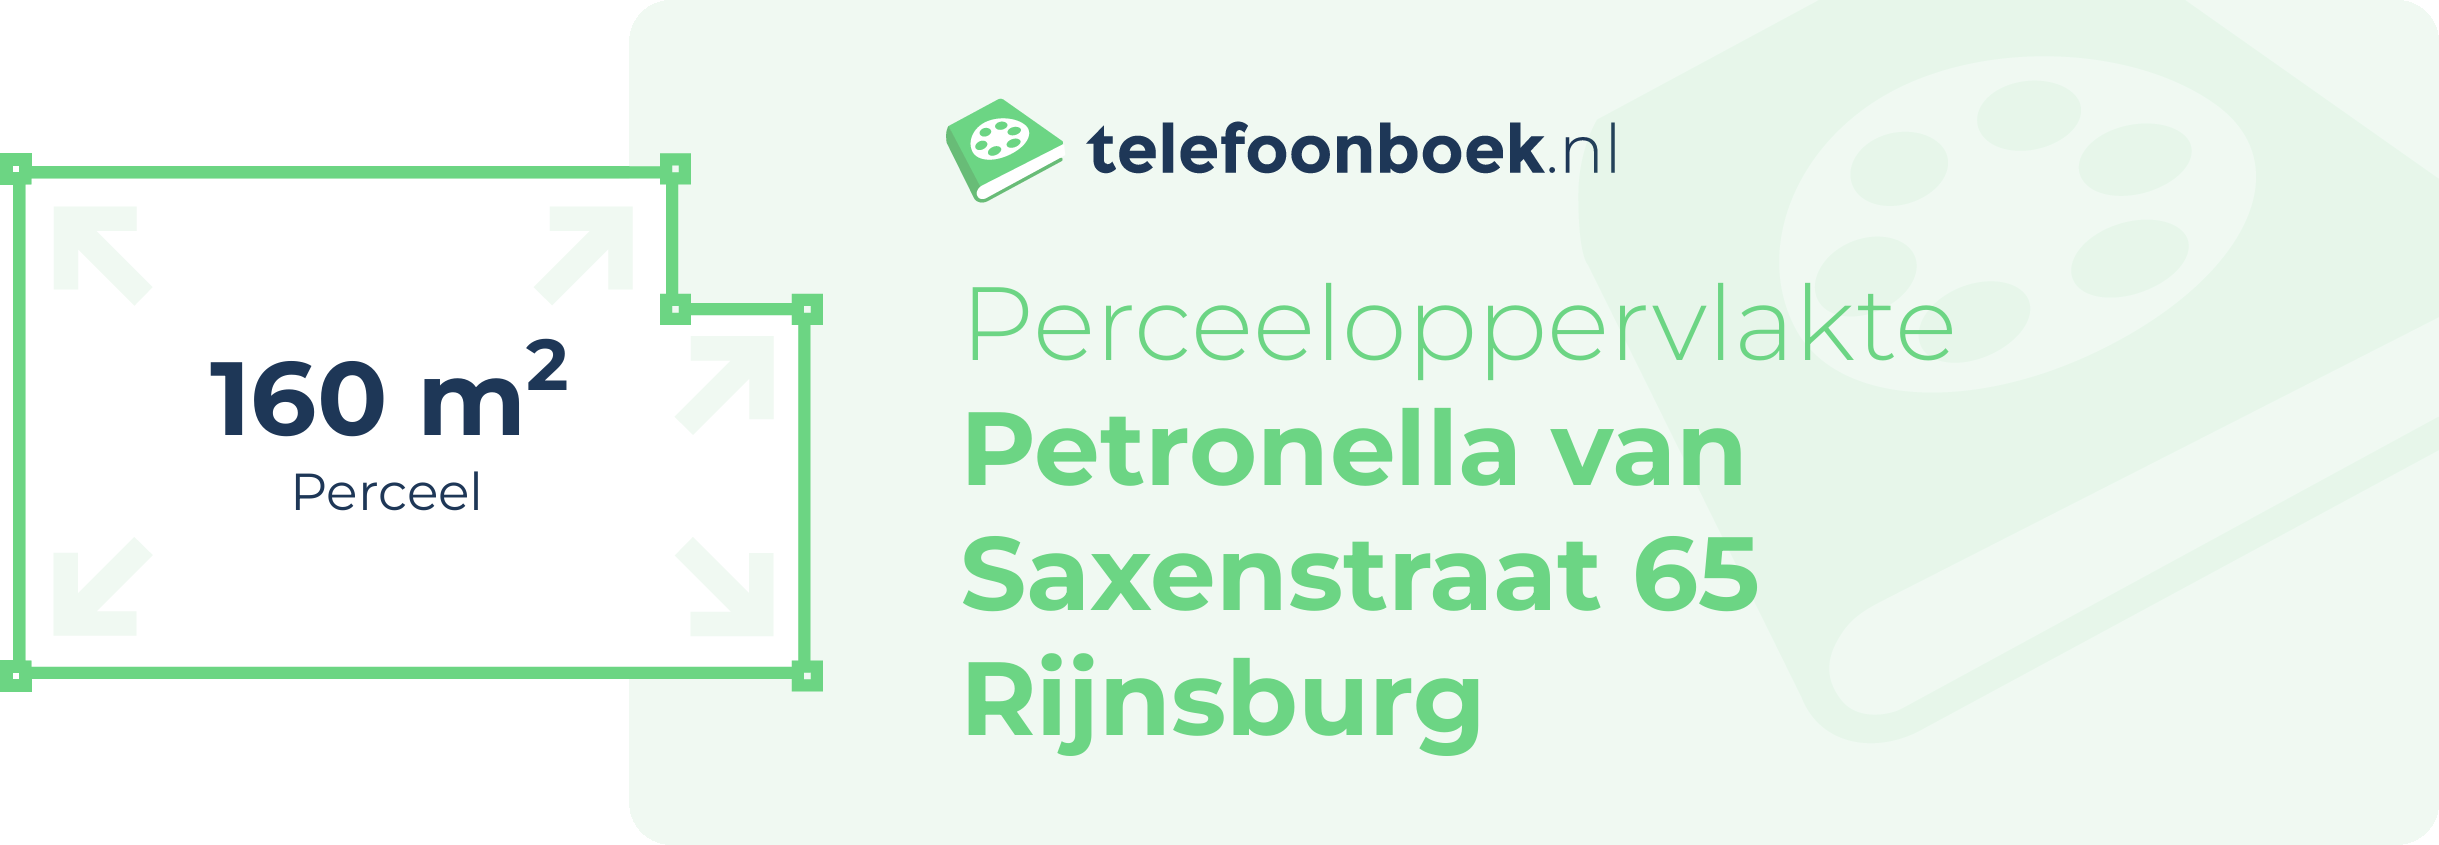 Perceeloppervlakte Petronella Van Saxenstraat 65 Rijnsburg